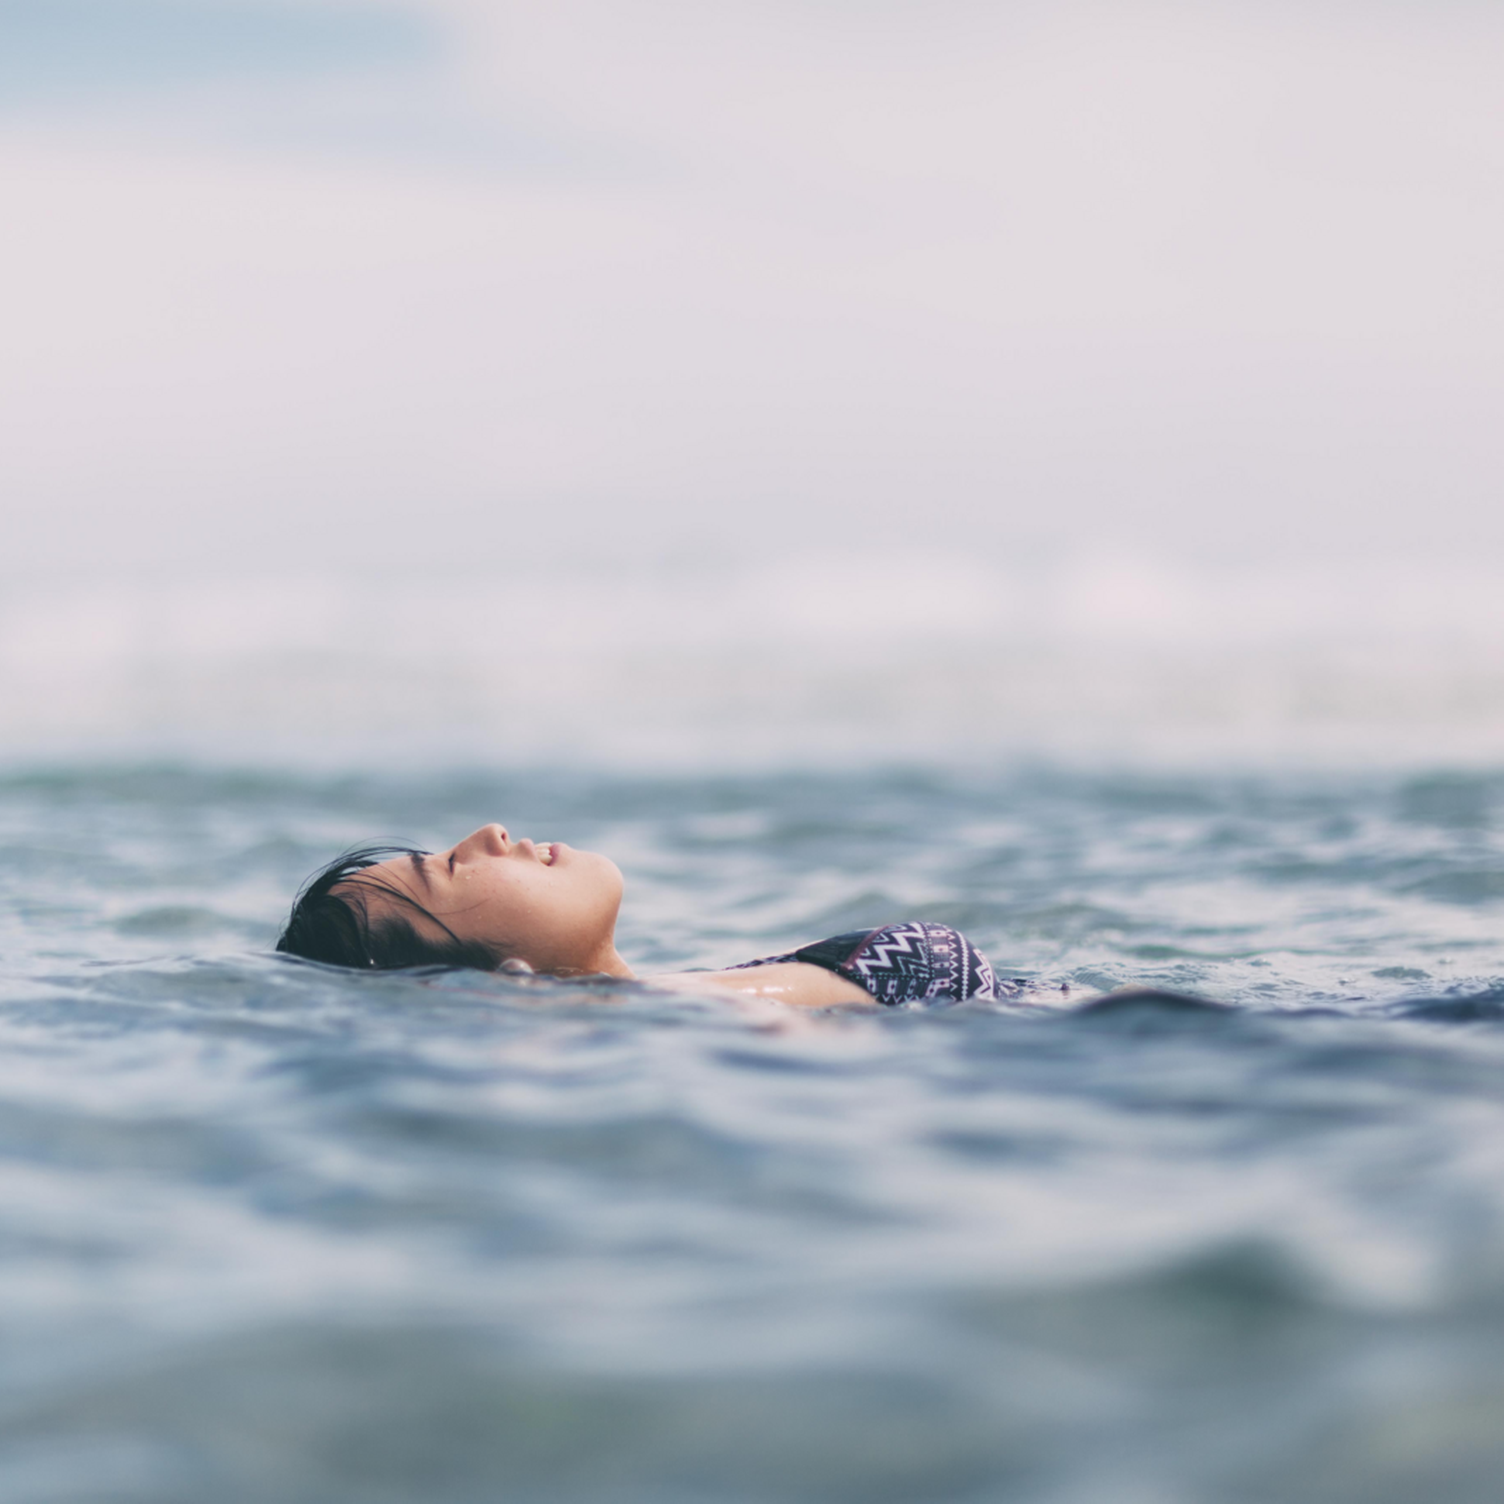 Eine Frau lässt ihren Körper auf der Wasseroberfläche treiben